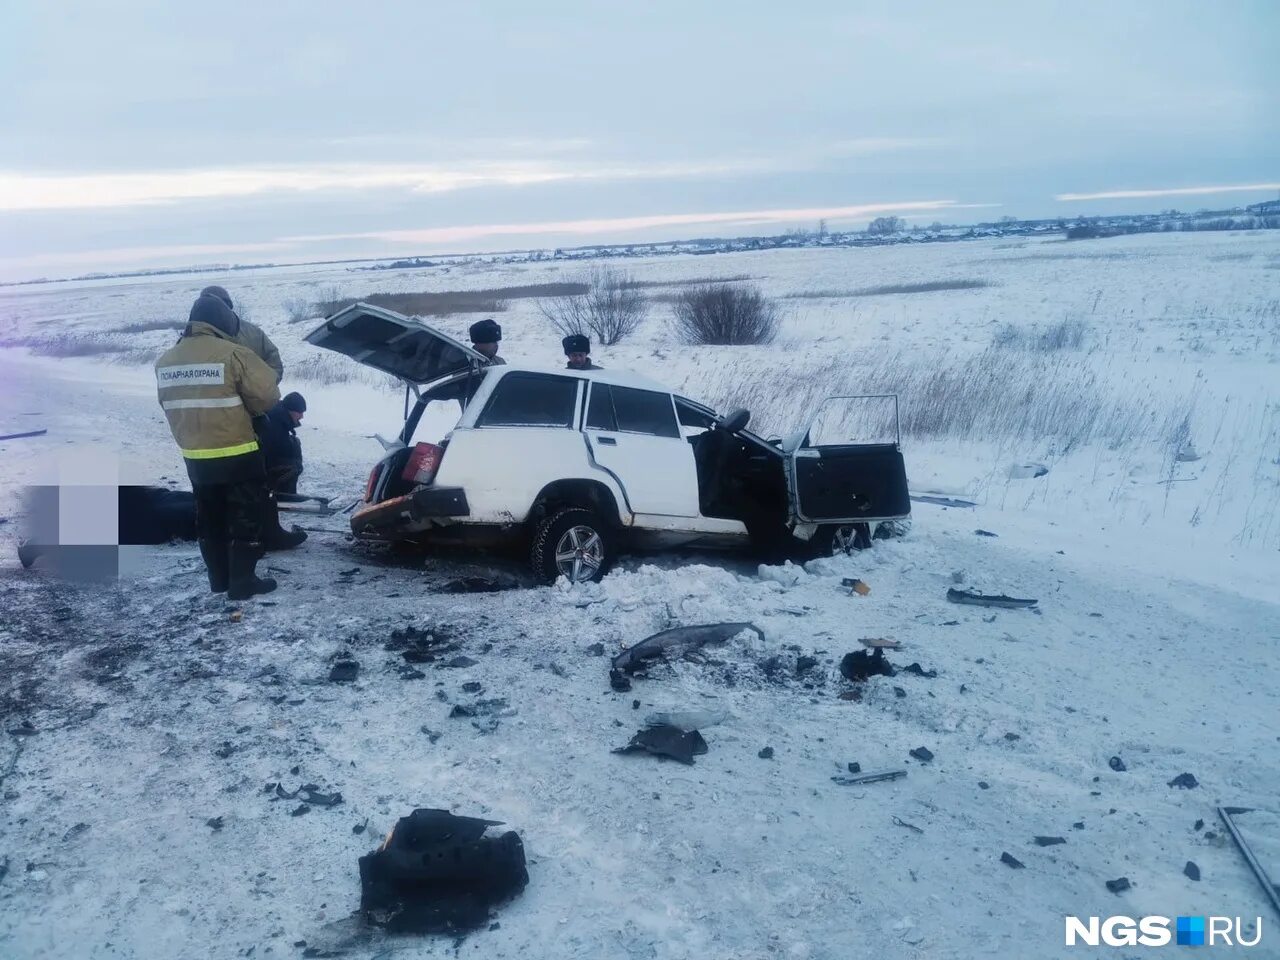 ДТП Новосибирская область три погибших. Авариявтогучинскомроене. 16 января 2017 года